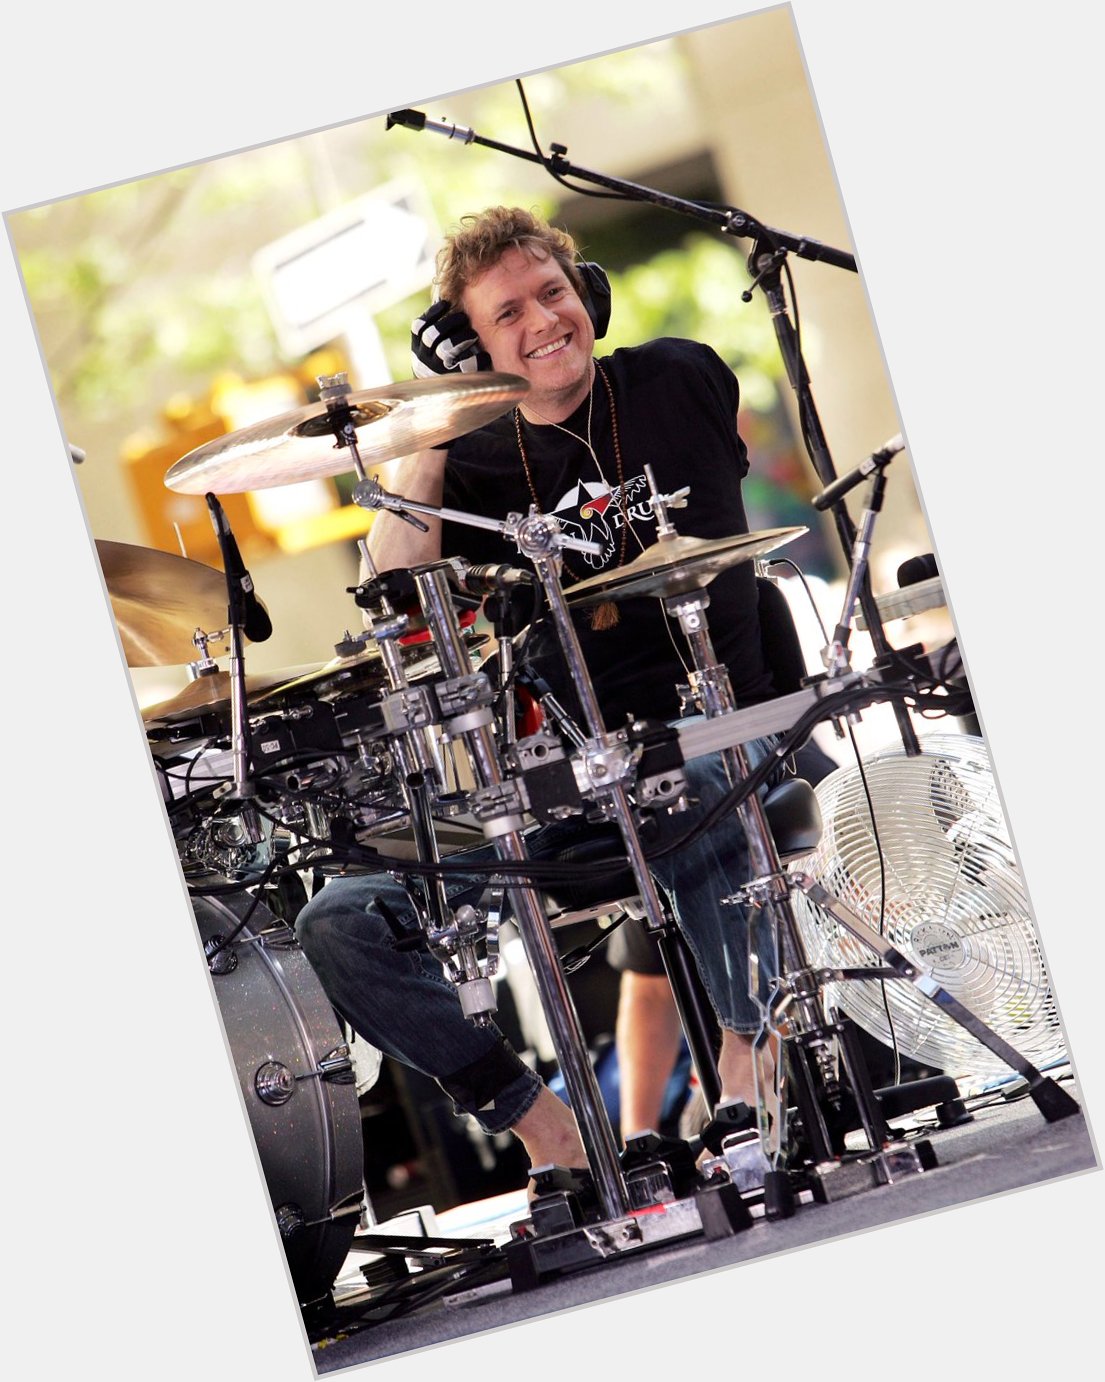 Also Happy Birthday to drummer Rick Allen, born this day in 1963 